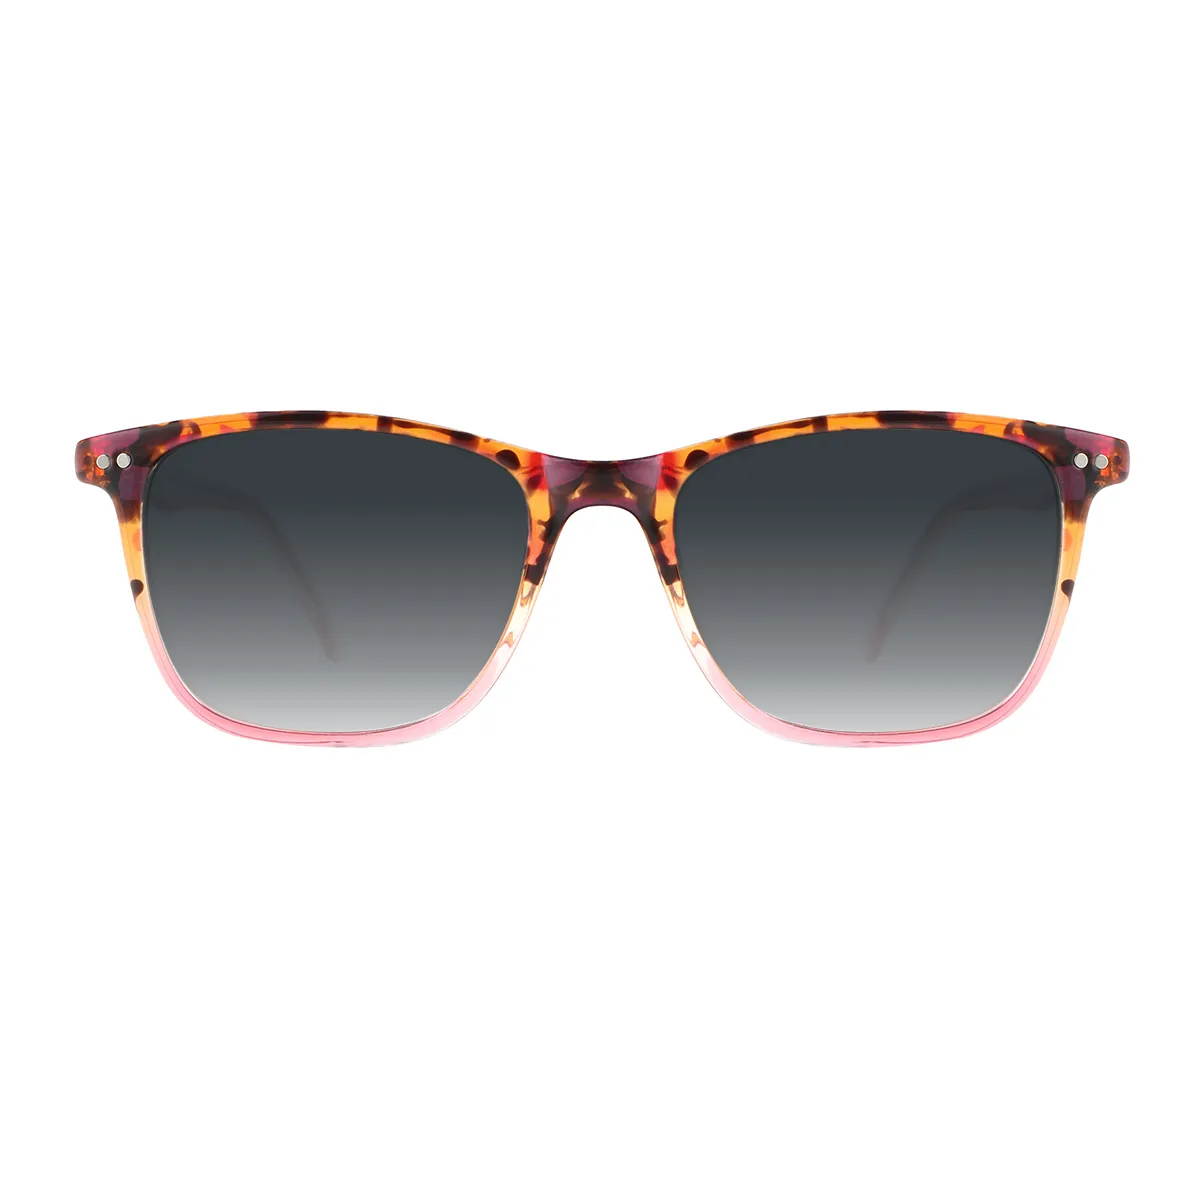 Business Square Demi-Brown  Sunglasses for Women & Men